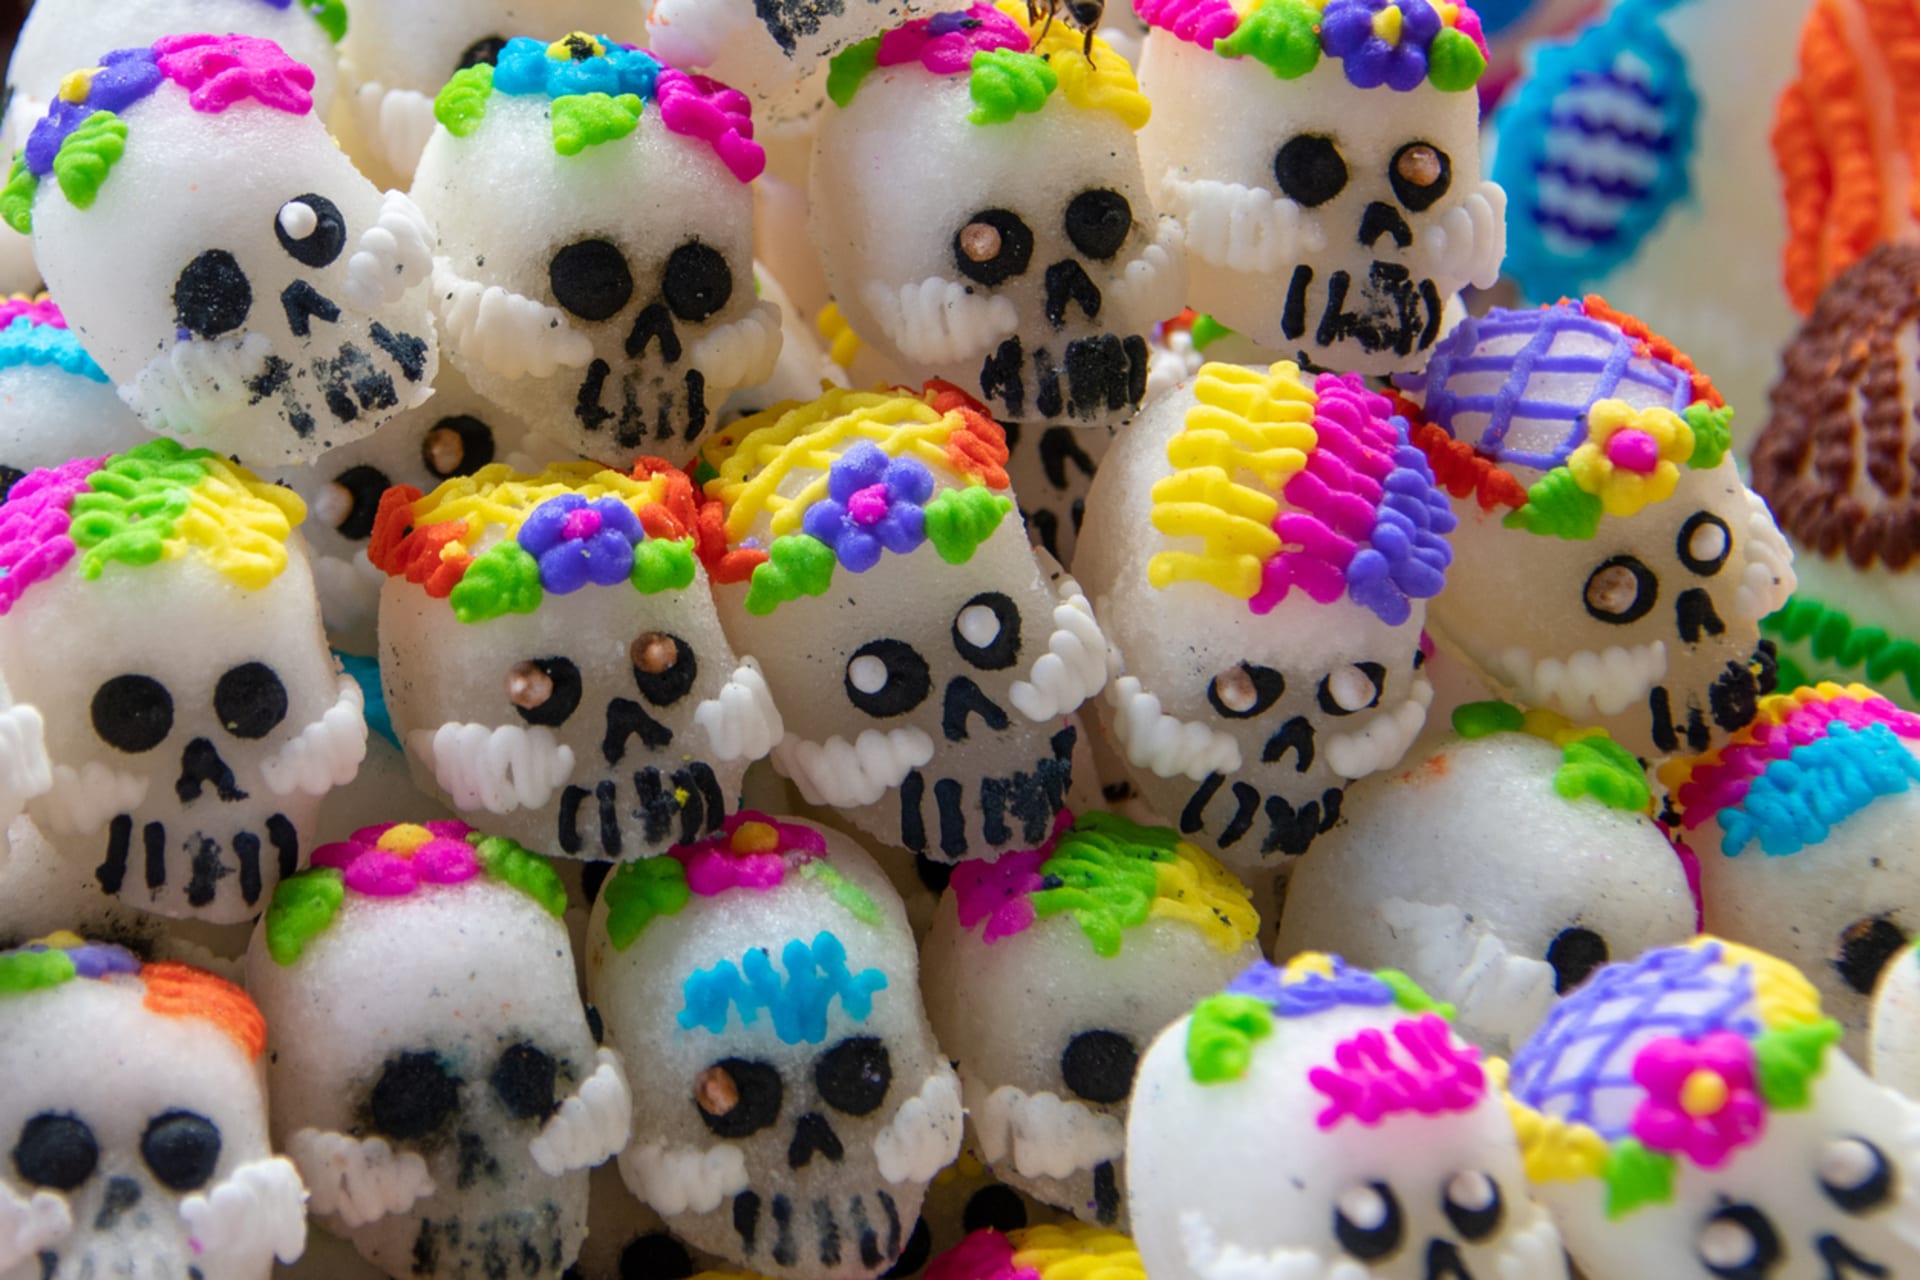 Před Dnem mrtvých vyrábějí Mexičani lebky z cukru, které bohatě zdobí třpytkami nebo blyštivým papírem